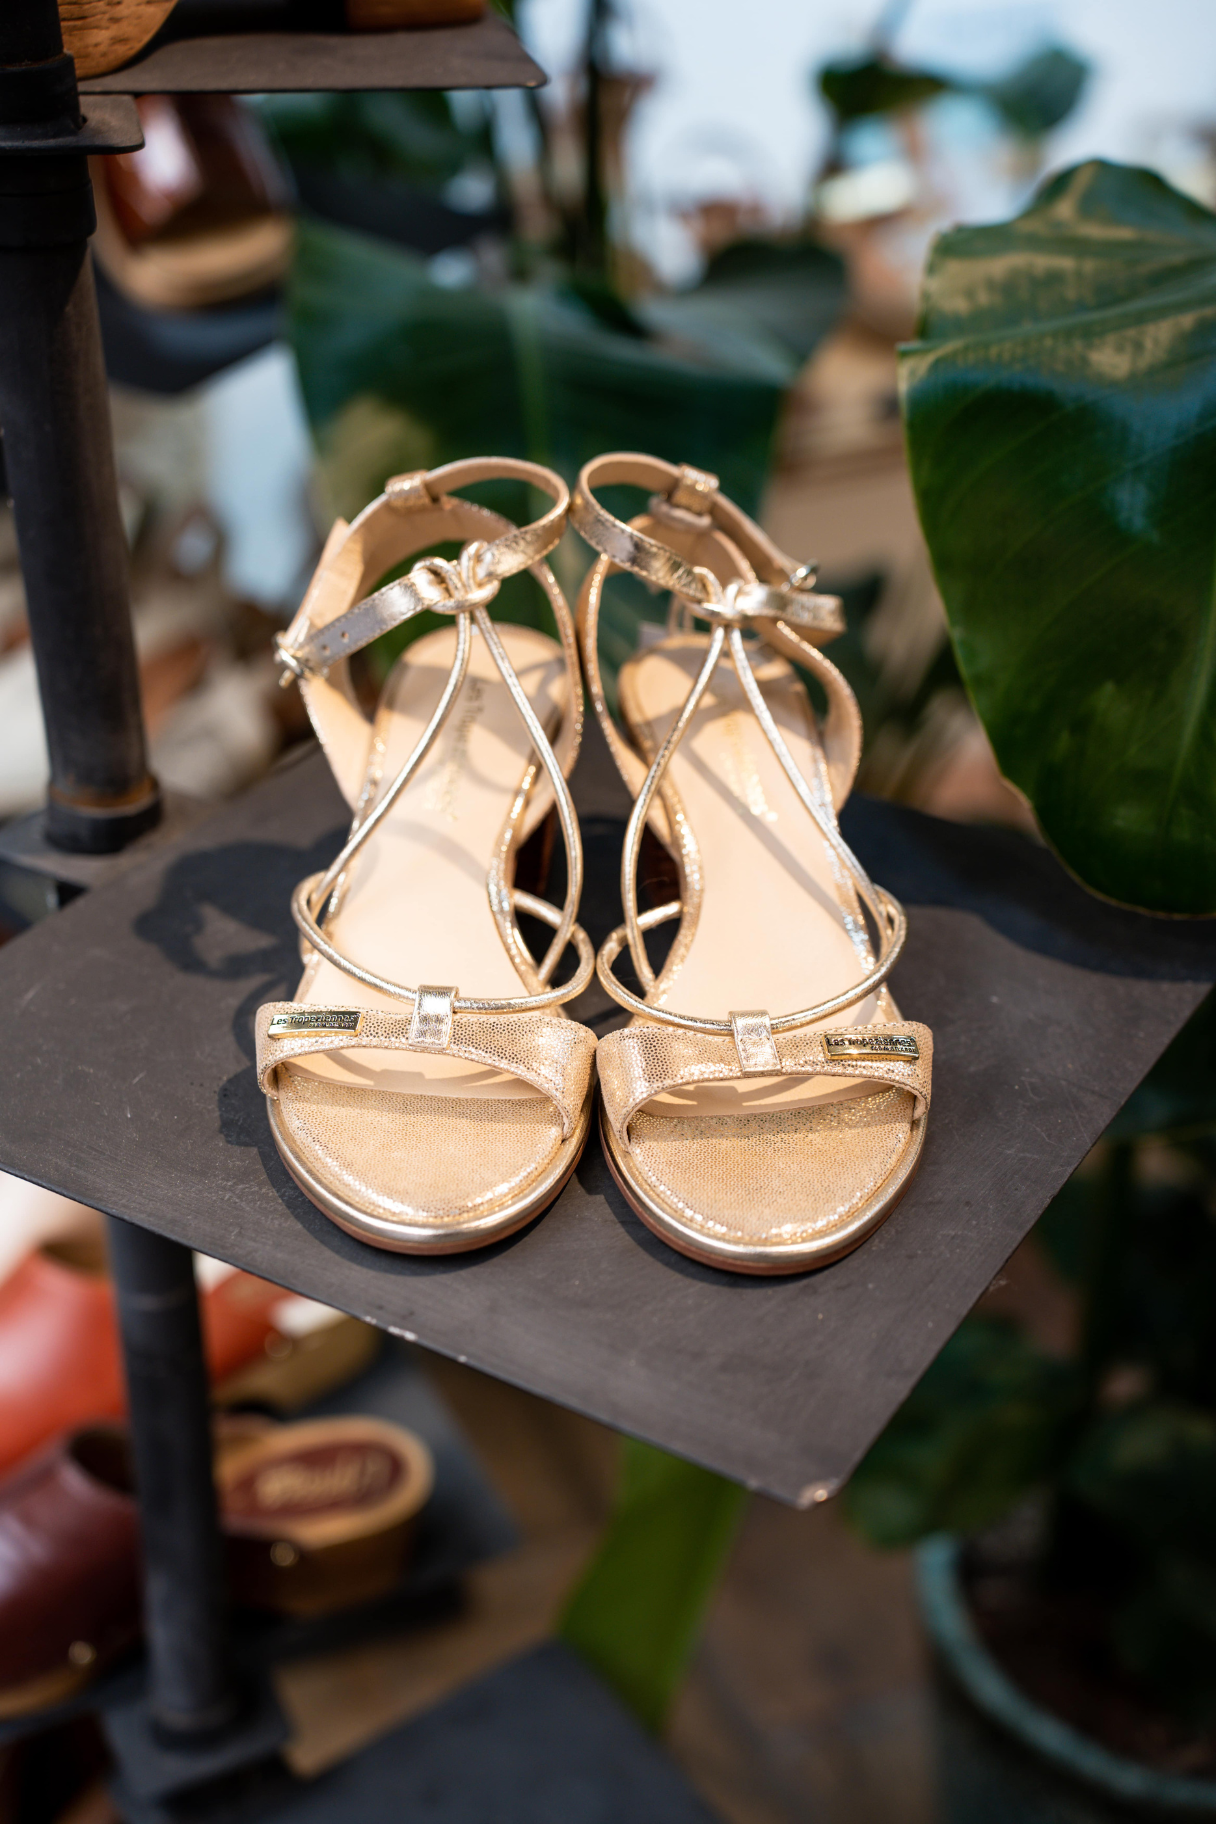 Les Tropéziennes - Lilon beige irisée : Sandales élégantes et tendance pour l'été - Nappa Maroquinerie